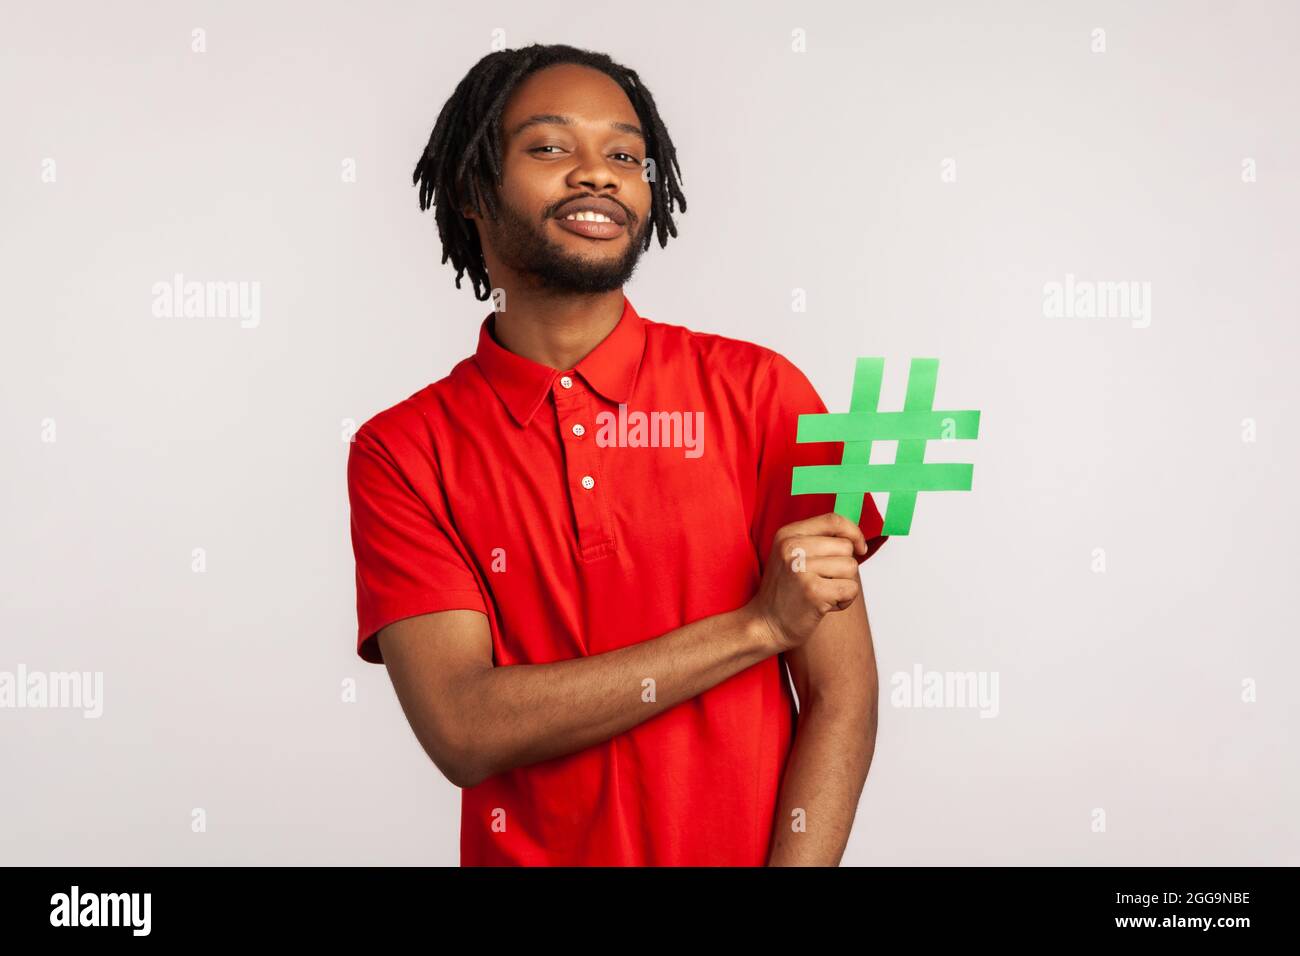 Abonnieren Sie den beliebten Blog! Bärtiger Mann mit Dreadlocks trägt ein rotes T-Shirt im lässigen Stil, hält ein Hashtag-Symbol für soziale Medien und lächelt. innenstudi Stockfoto